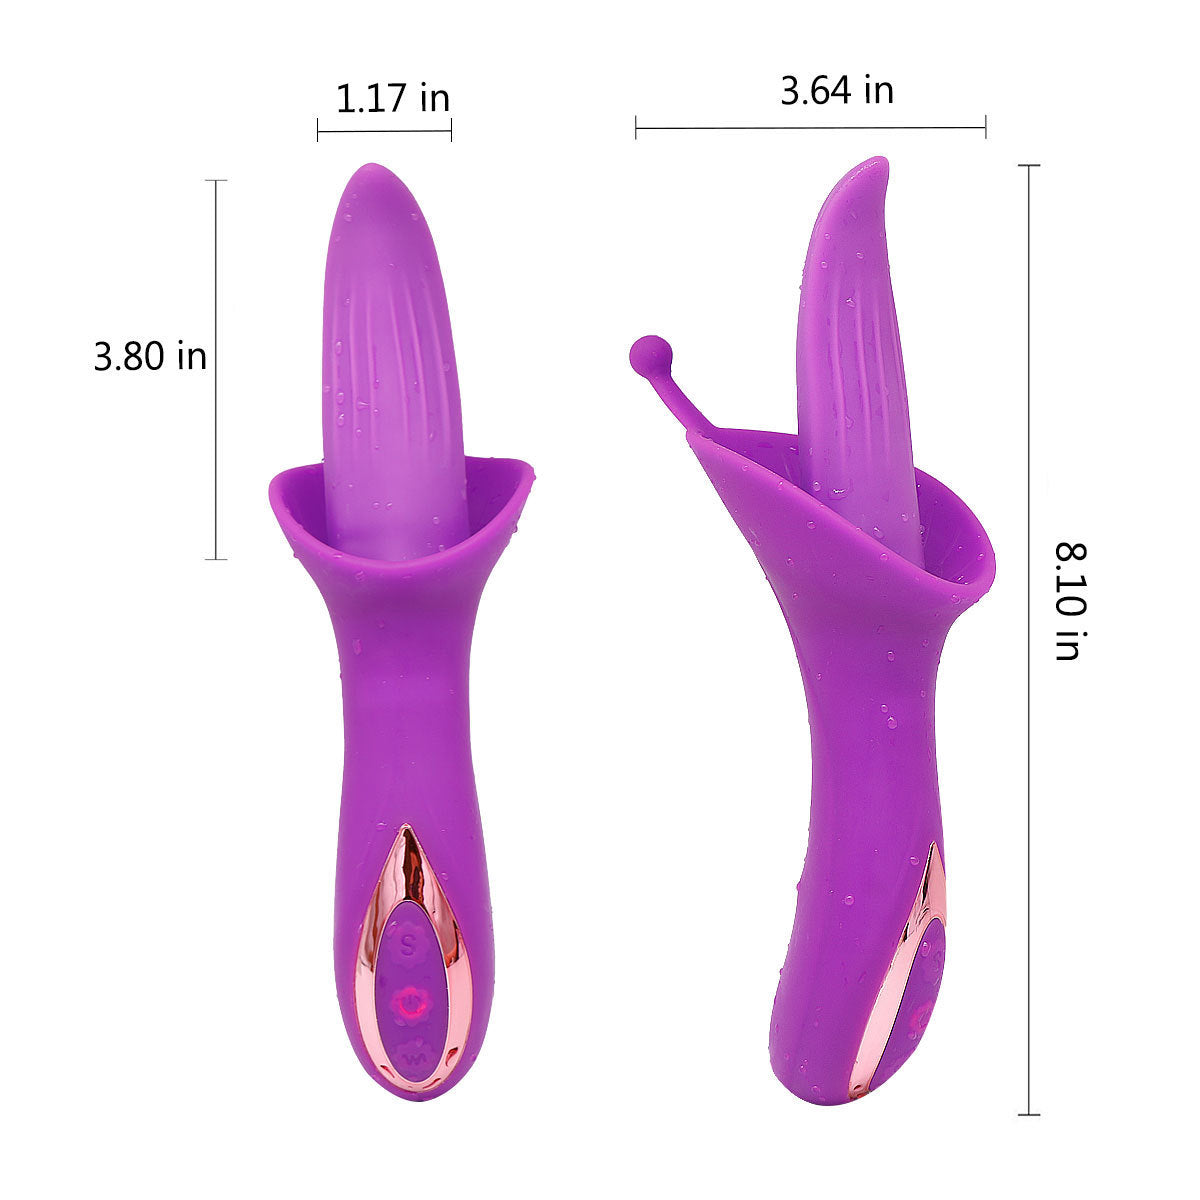 Klitoris-Stimulator zum Zungenlecken – G-Punkt-Klitoris-Analvibrator